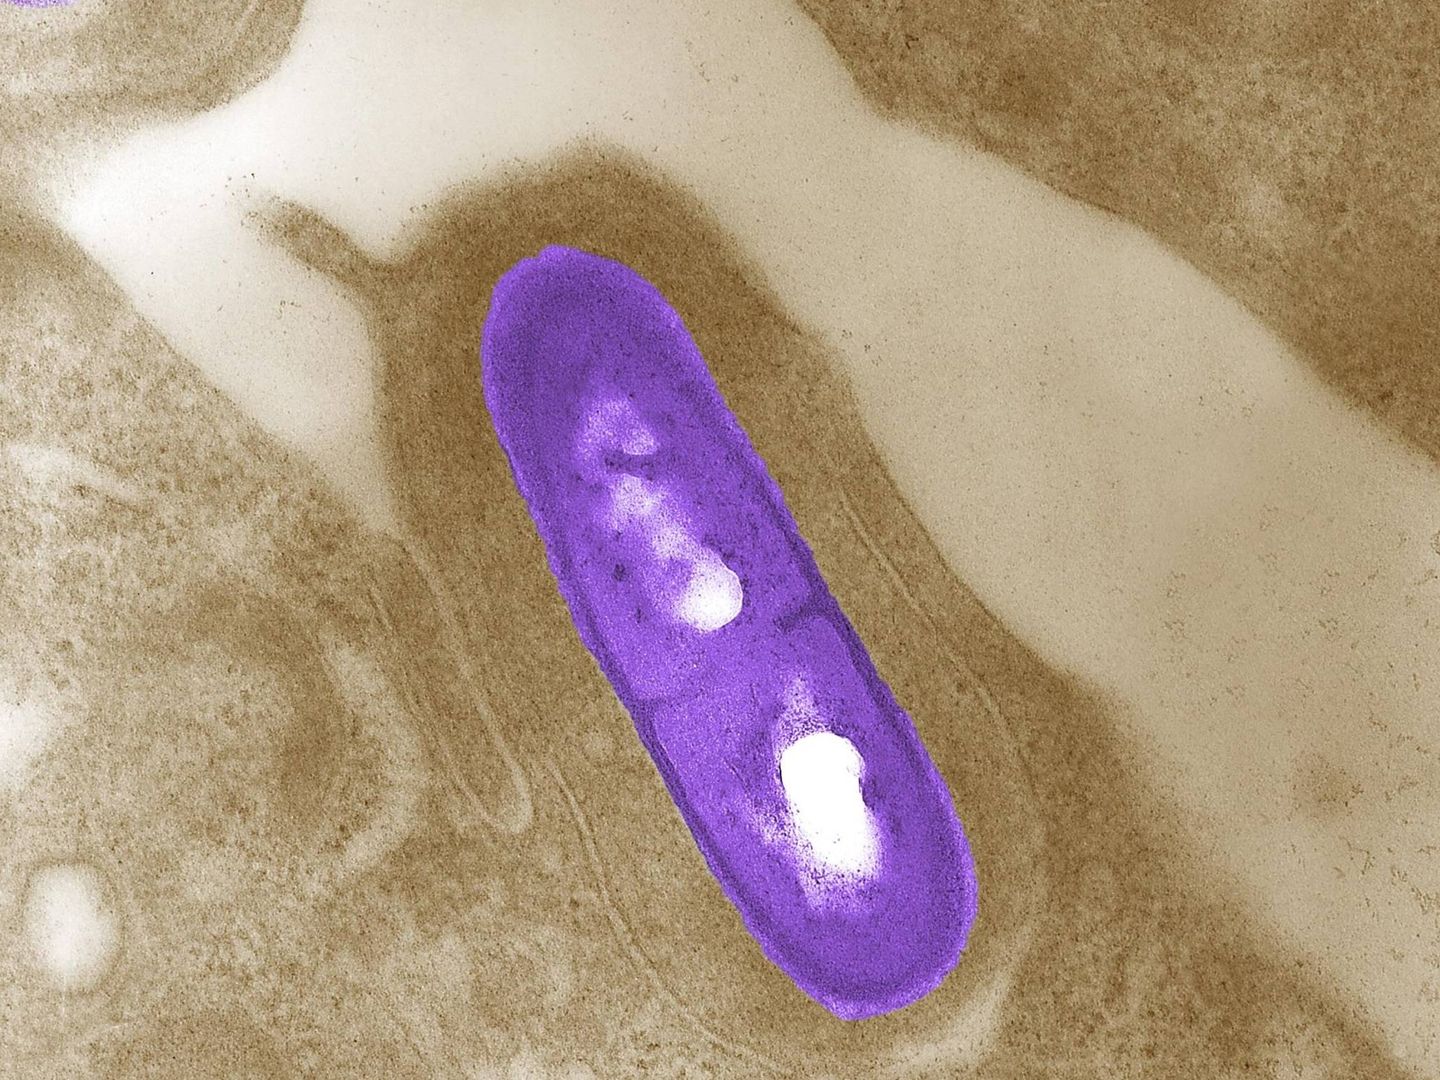 Imagen microscópica de una bacteria Listeria monocytogenes. (Reuters)